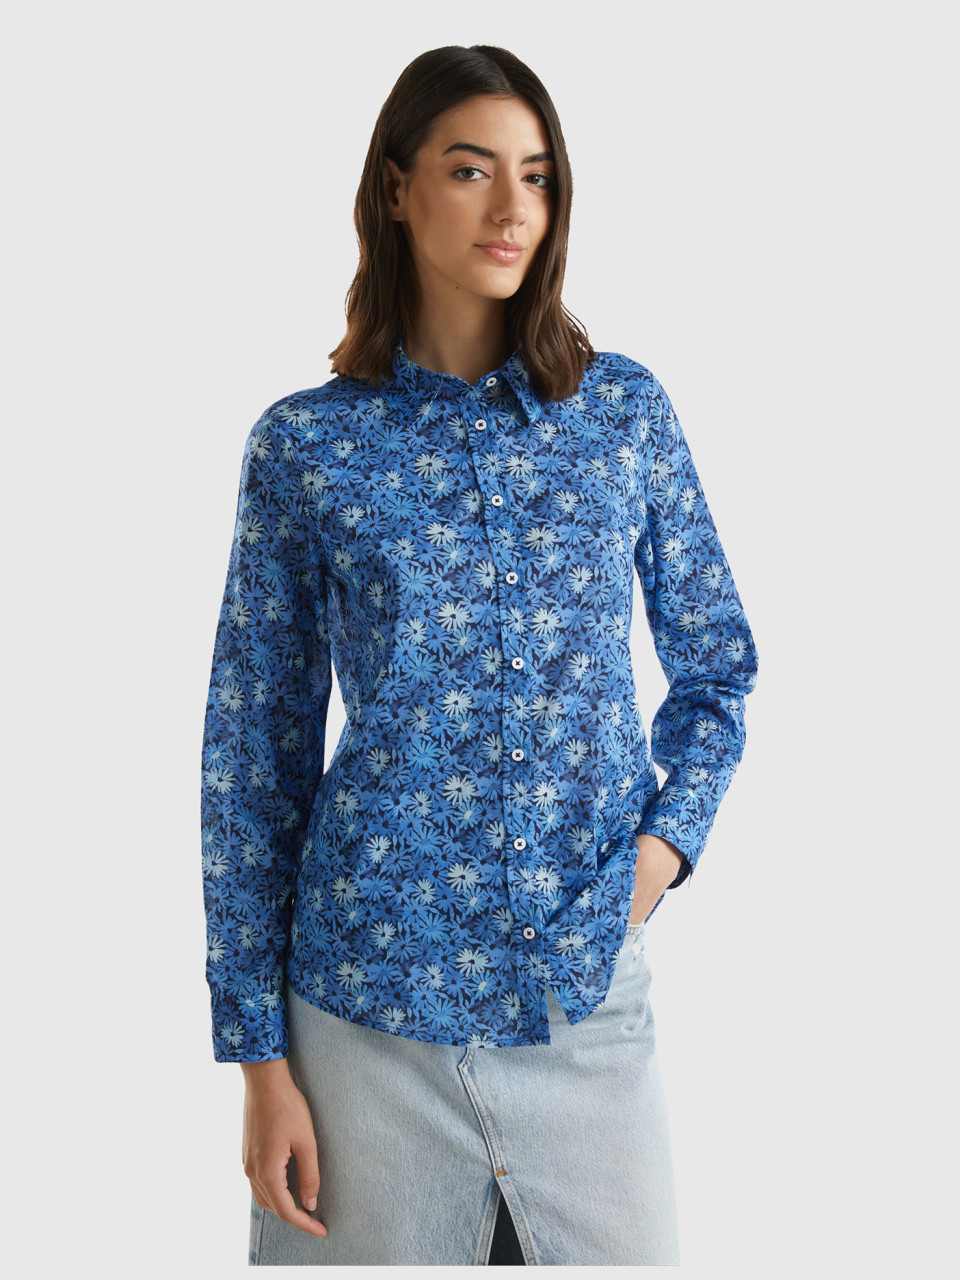 Benetton, 100% Cotton Patterned Shirt, Blue, Women